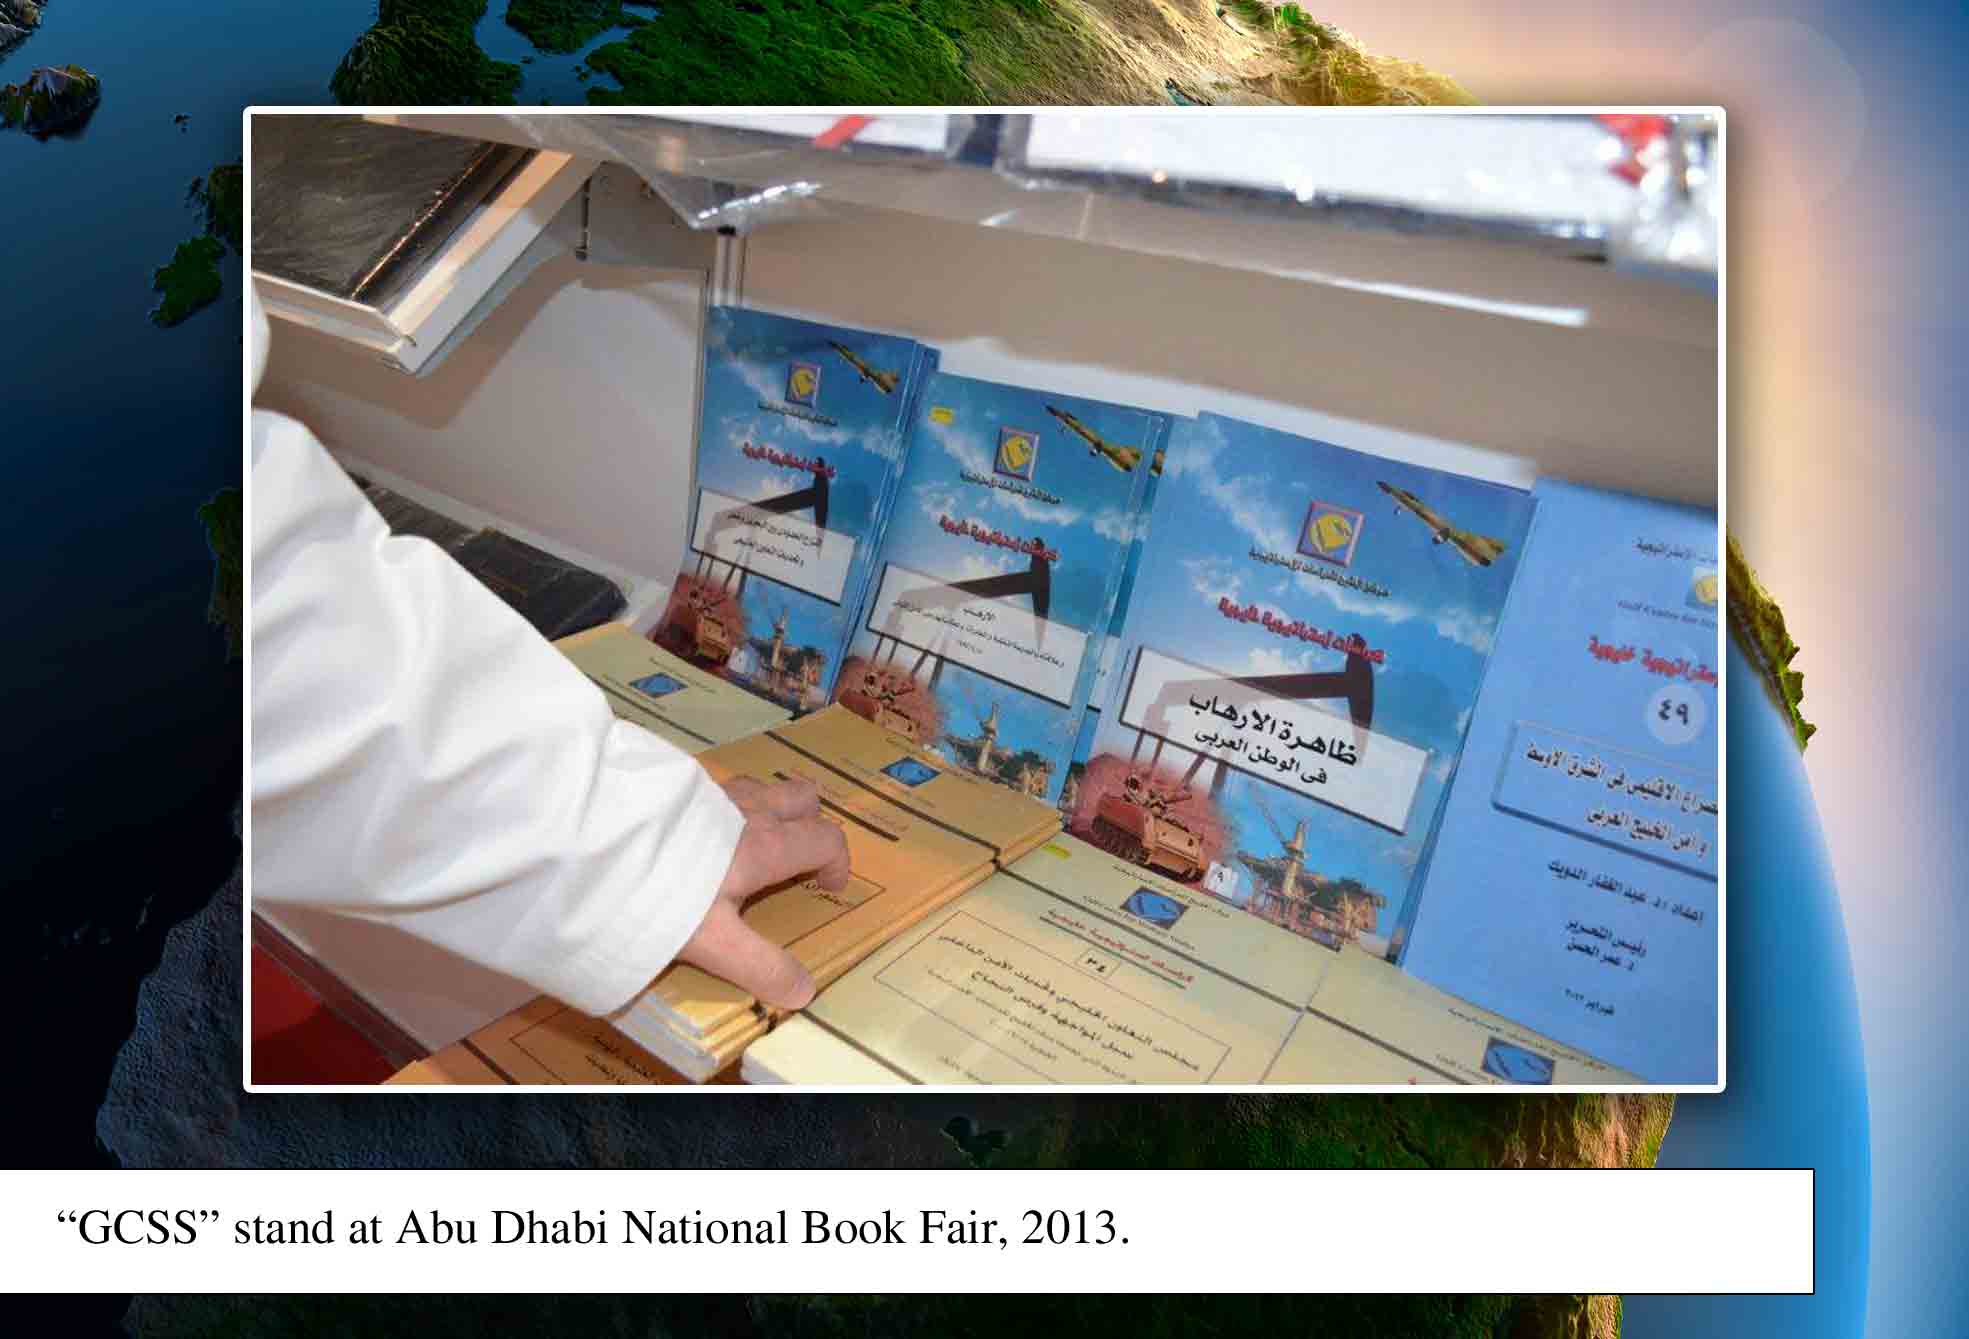  Abu Dhabi Book Fair 2013